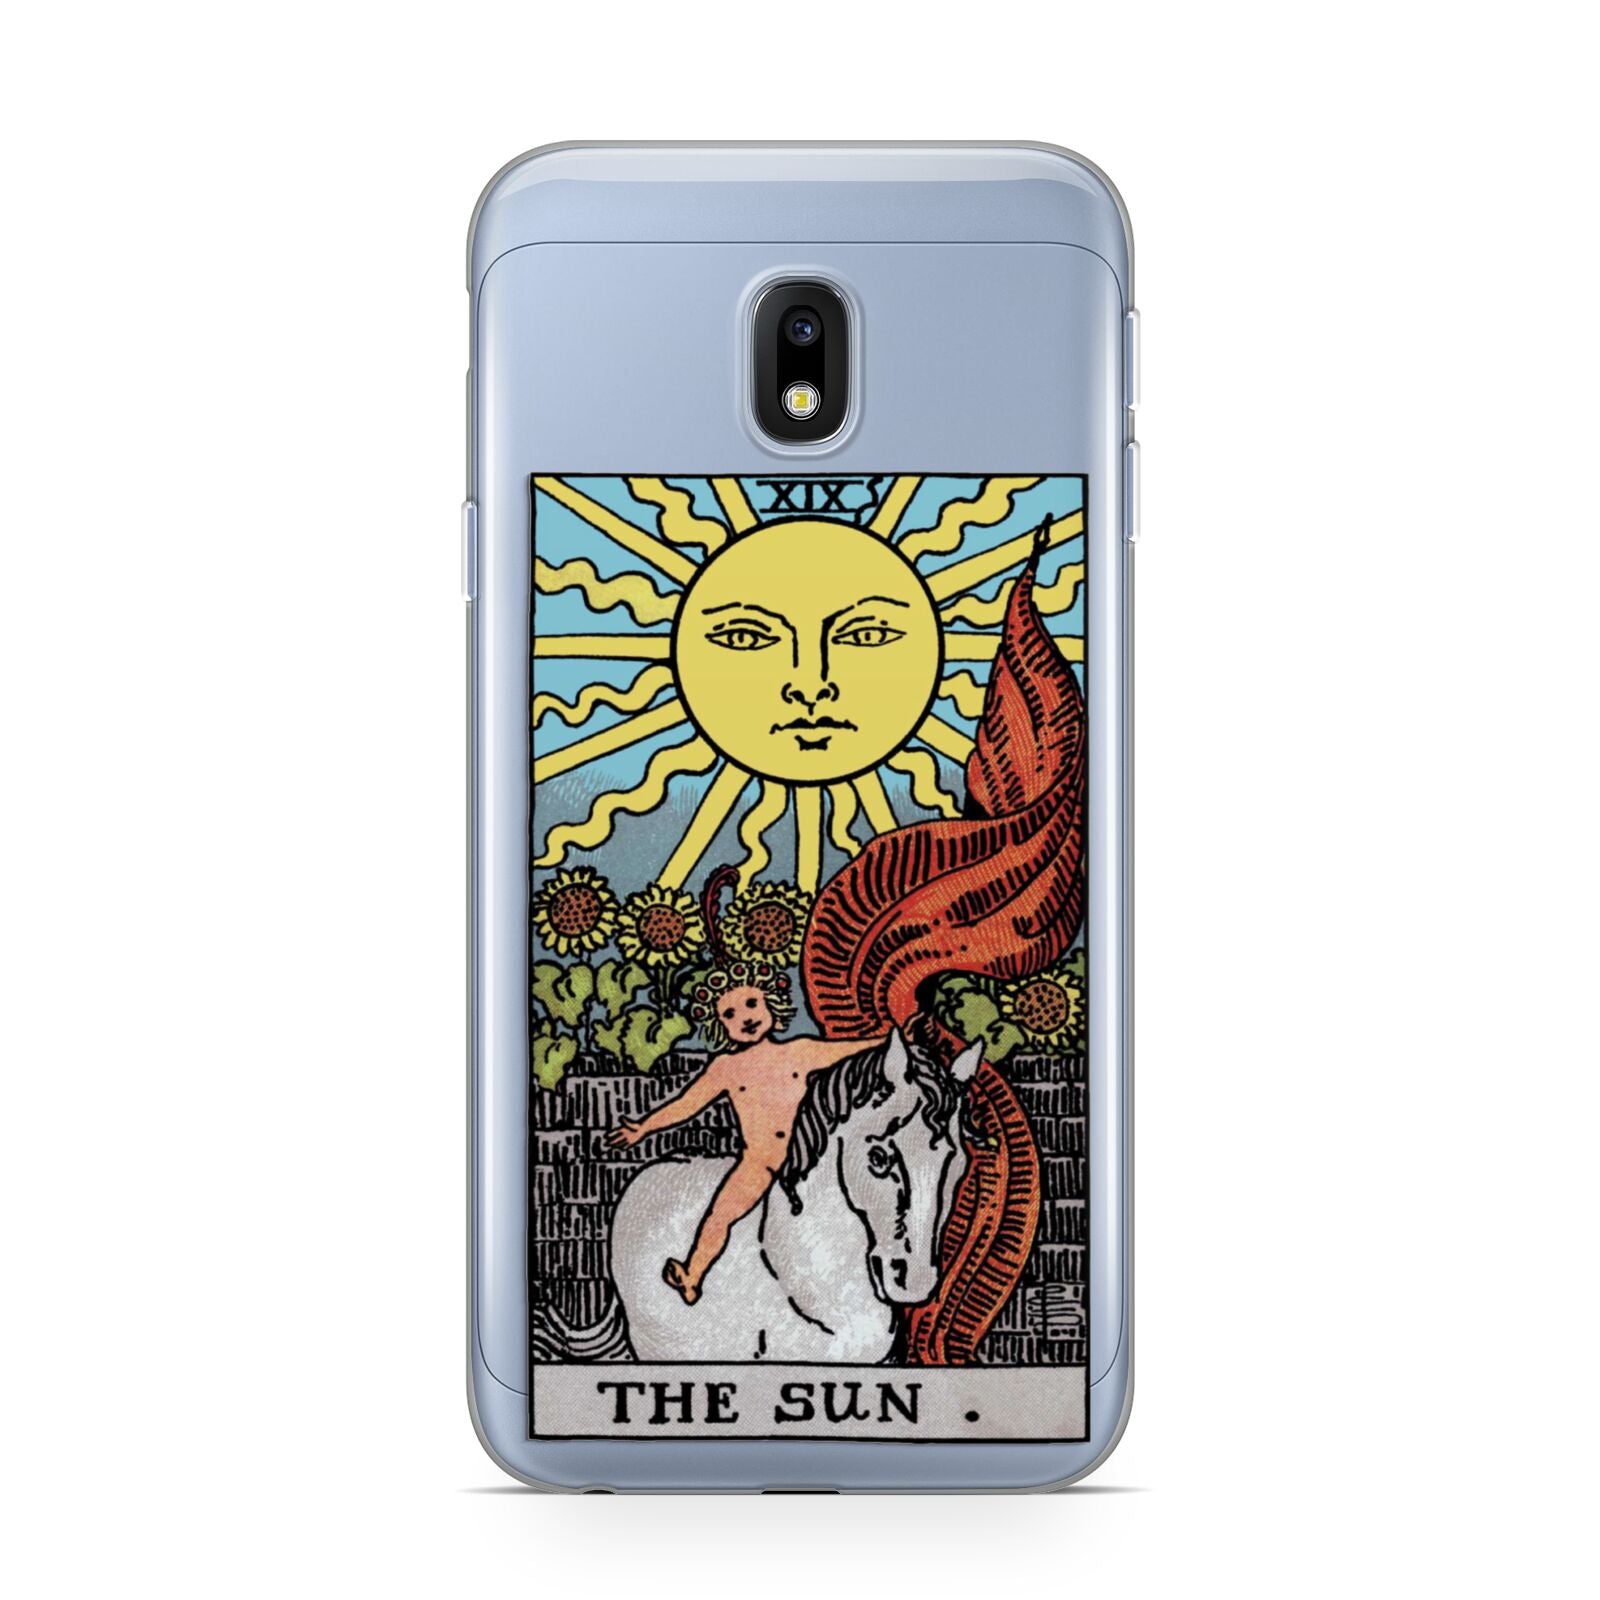 The Sun Tarot Card Samsung Galaxy J3 2017 Case